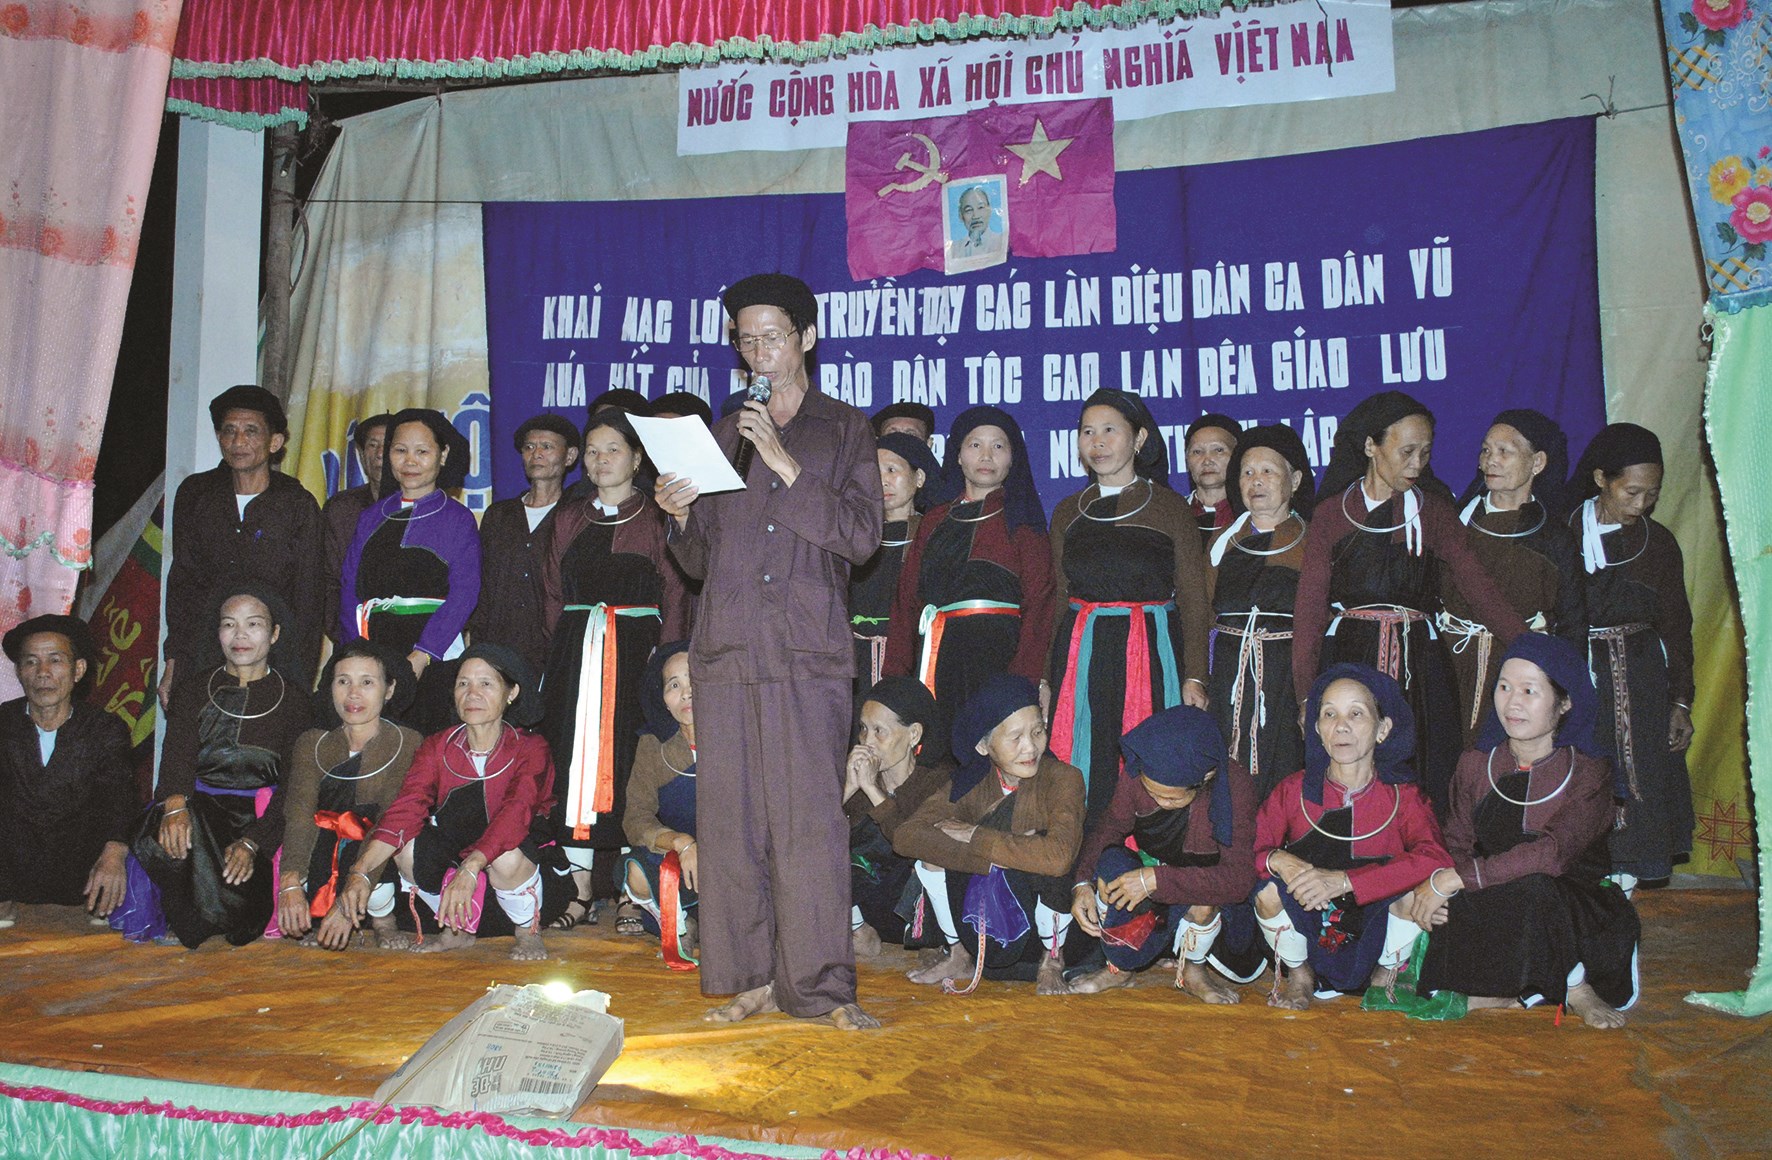 Nghệ nhân Hoàng Giang Lâm (người cầm Mic) trong buổi truyền dạy dân ca, dân vũ Cao Lan